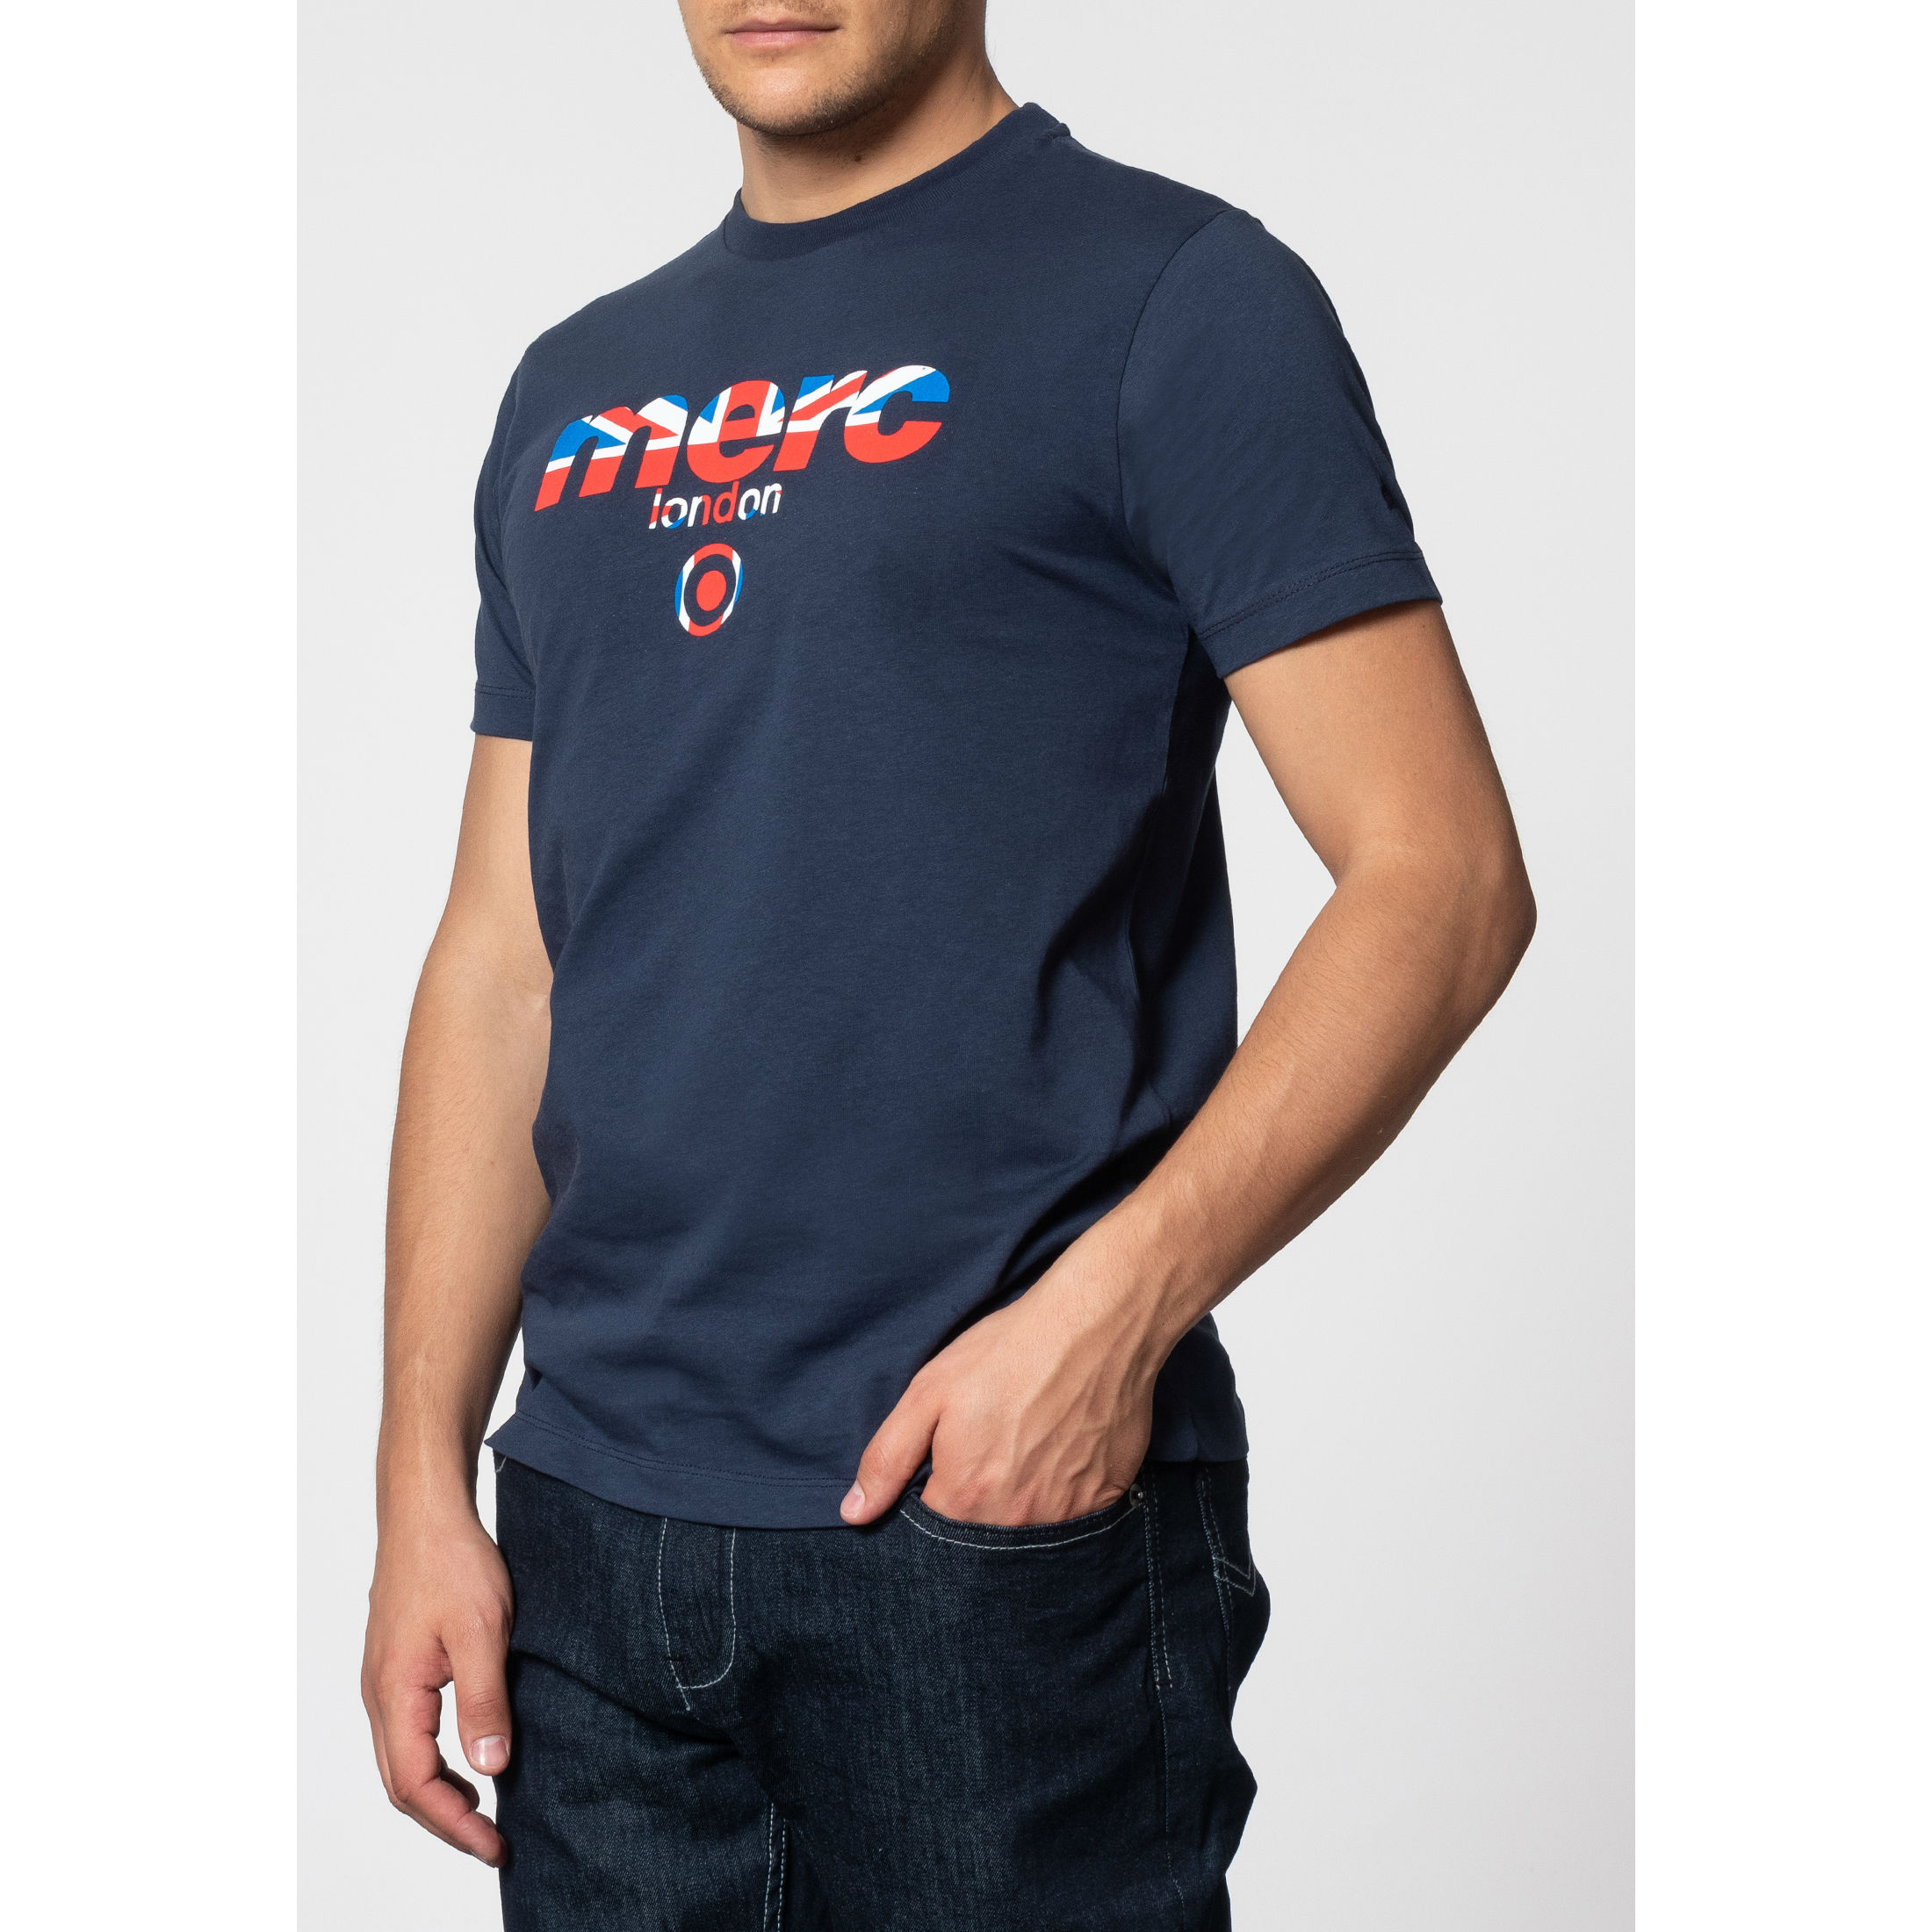 Мужская футболка Merc Broadwell темно синяя с классическим логотипом Merc, купить на официальном сайте 